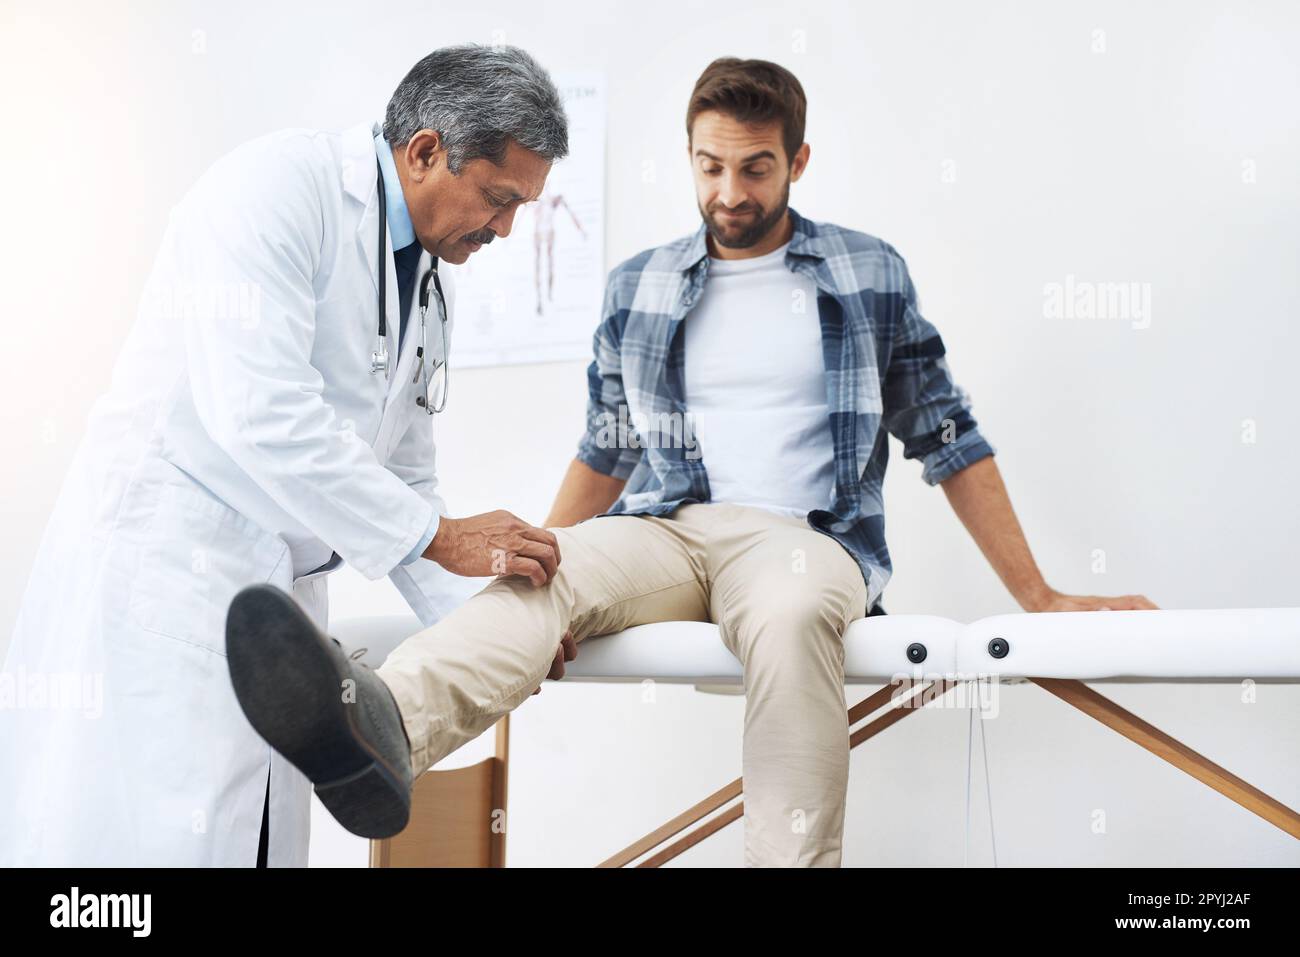 Entspann dich und sag mir, wo es wehtut. Ein reifer, männlicher Arzt, der einen jungen Patienten untersucht, der auf einem Ärztebett sitzt. Stockfoto